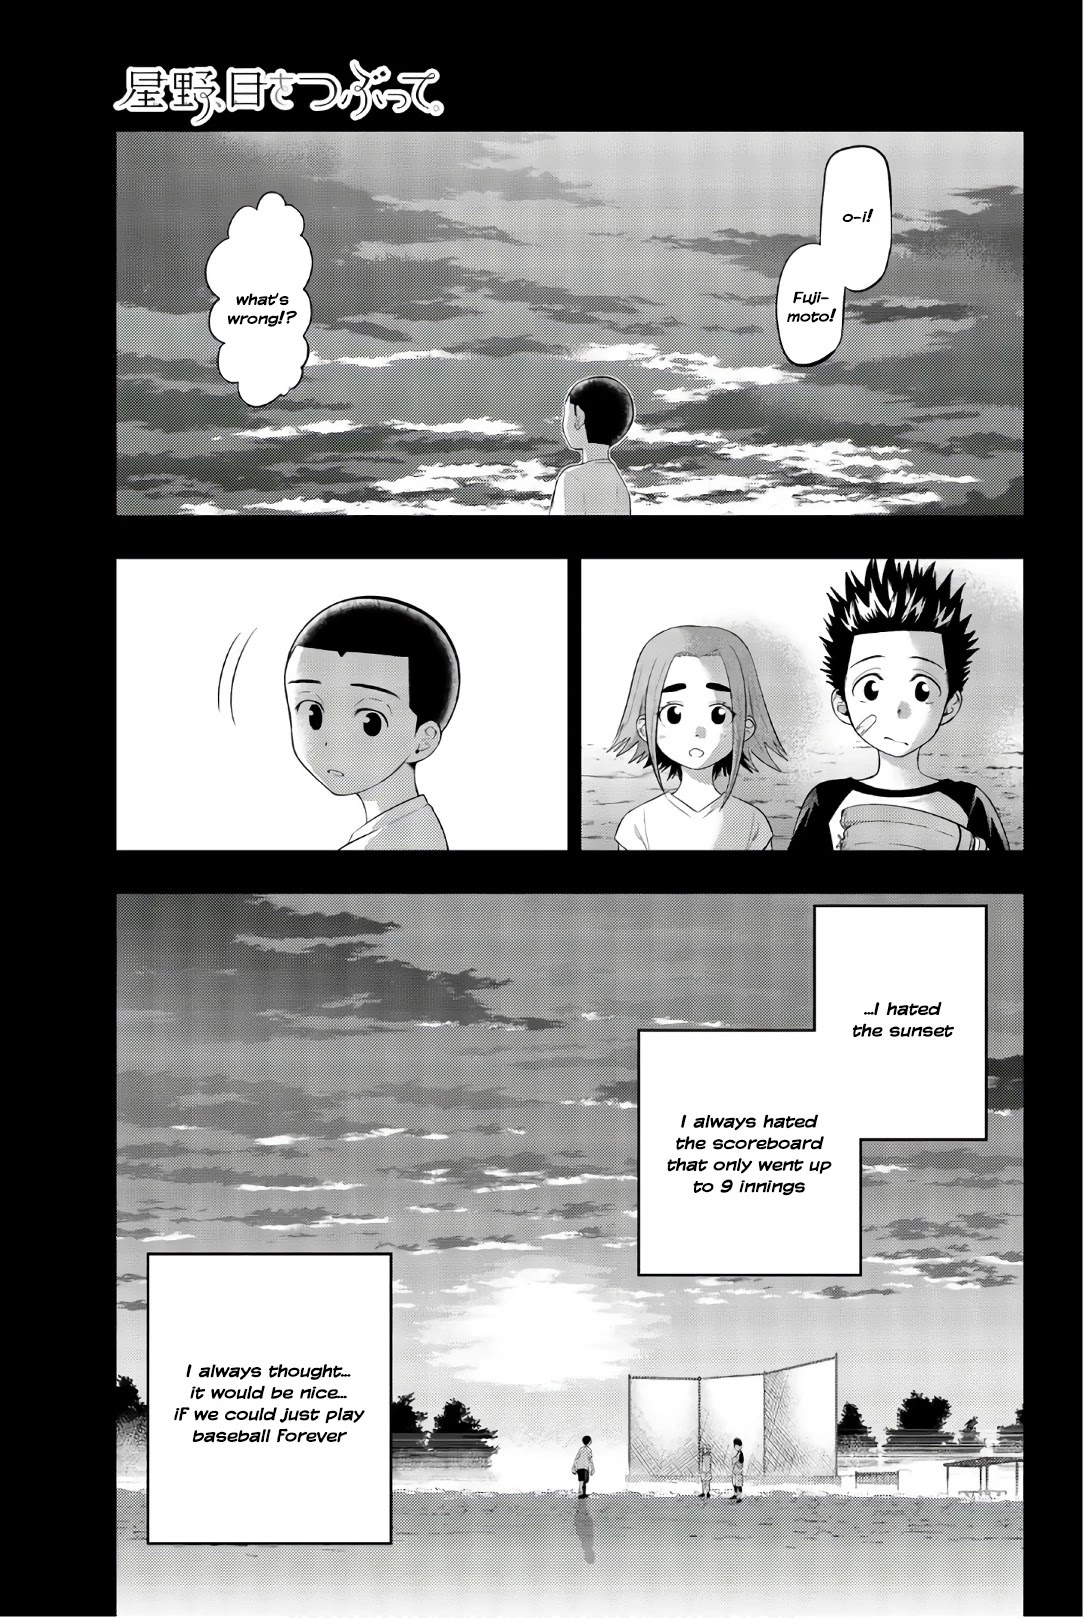 Hoshino, Me O Tsubutte. - Page 2